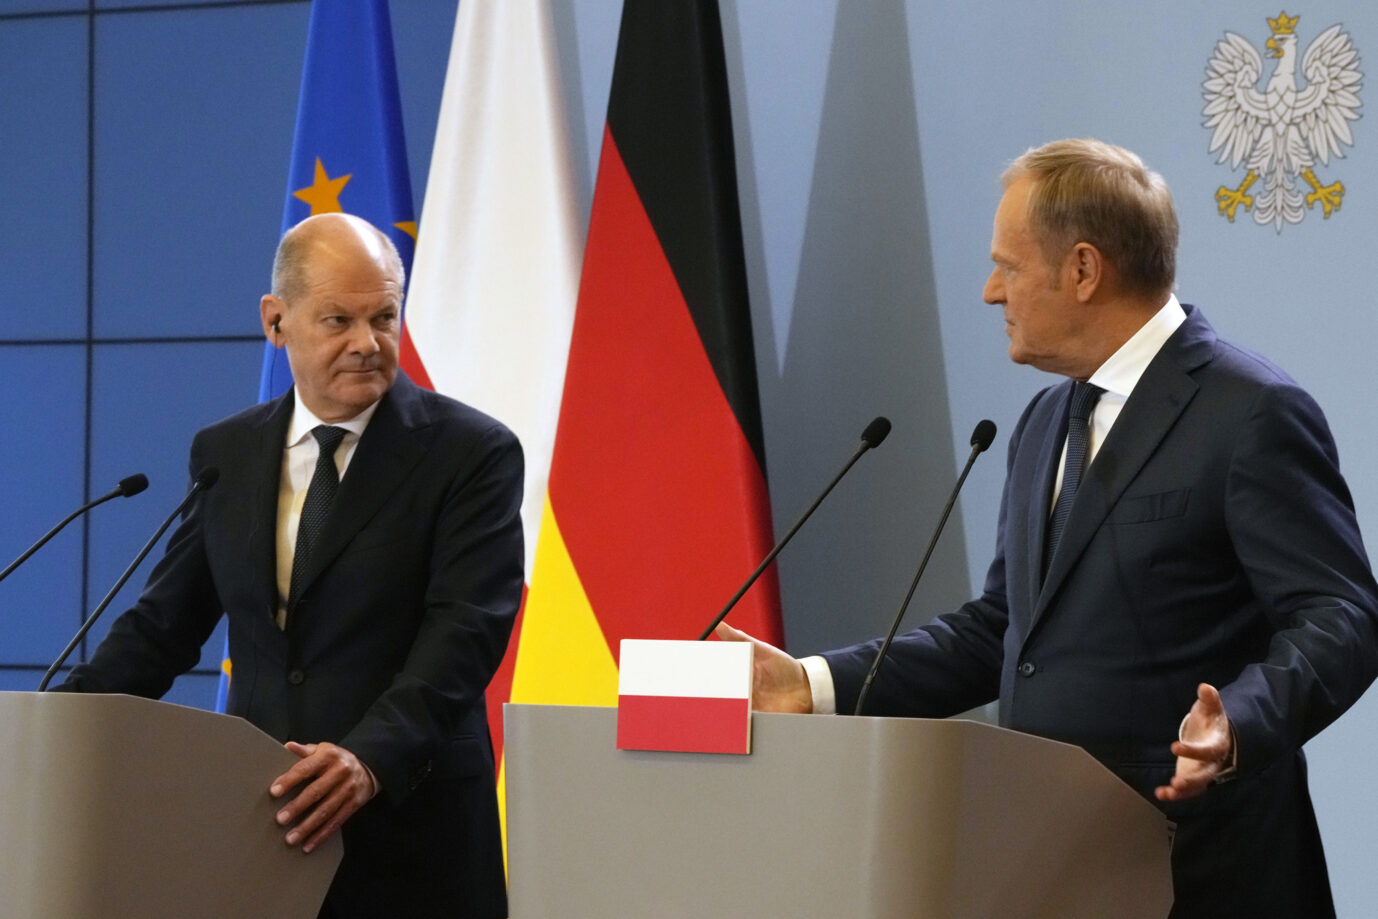 Bundeskanzler Olaf Scholz (SPD) und der polnische Regierungschef Donald Tusk halten am Dienstag eine Pressekonferenz in Warschau ab